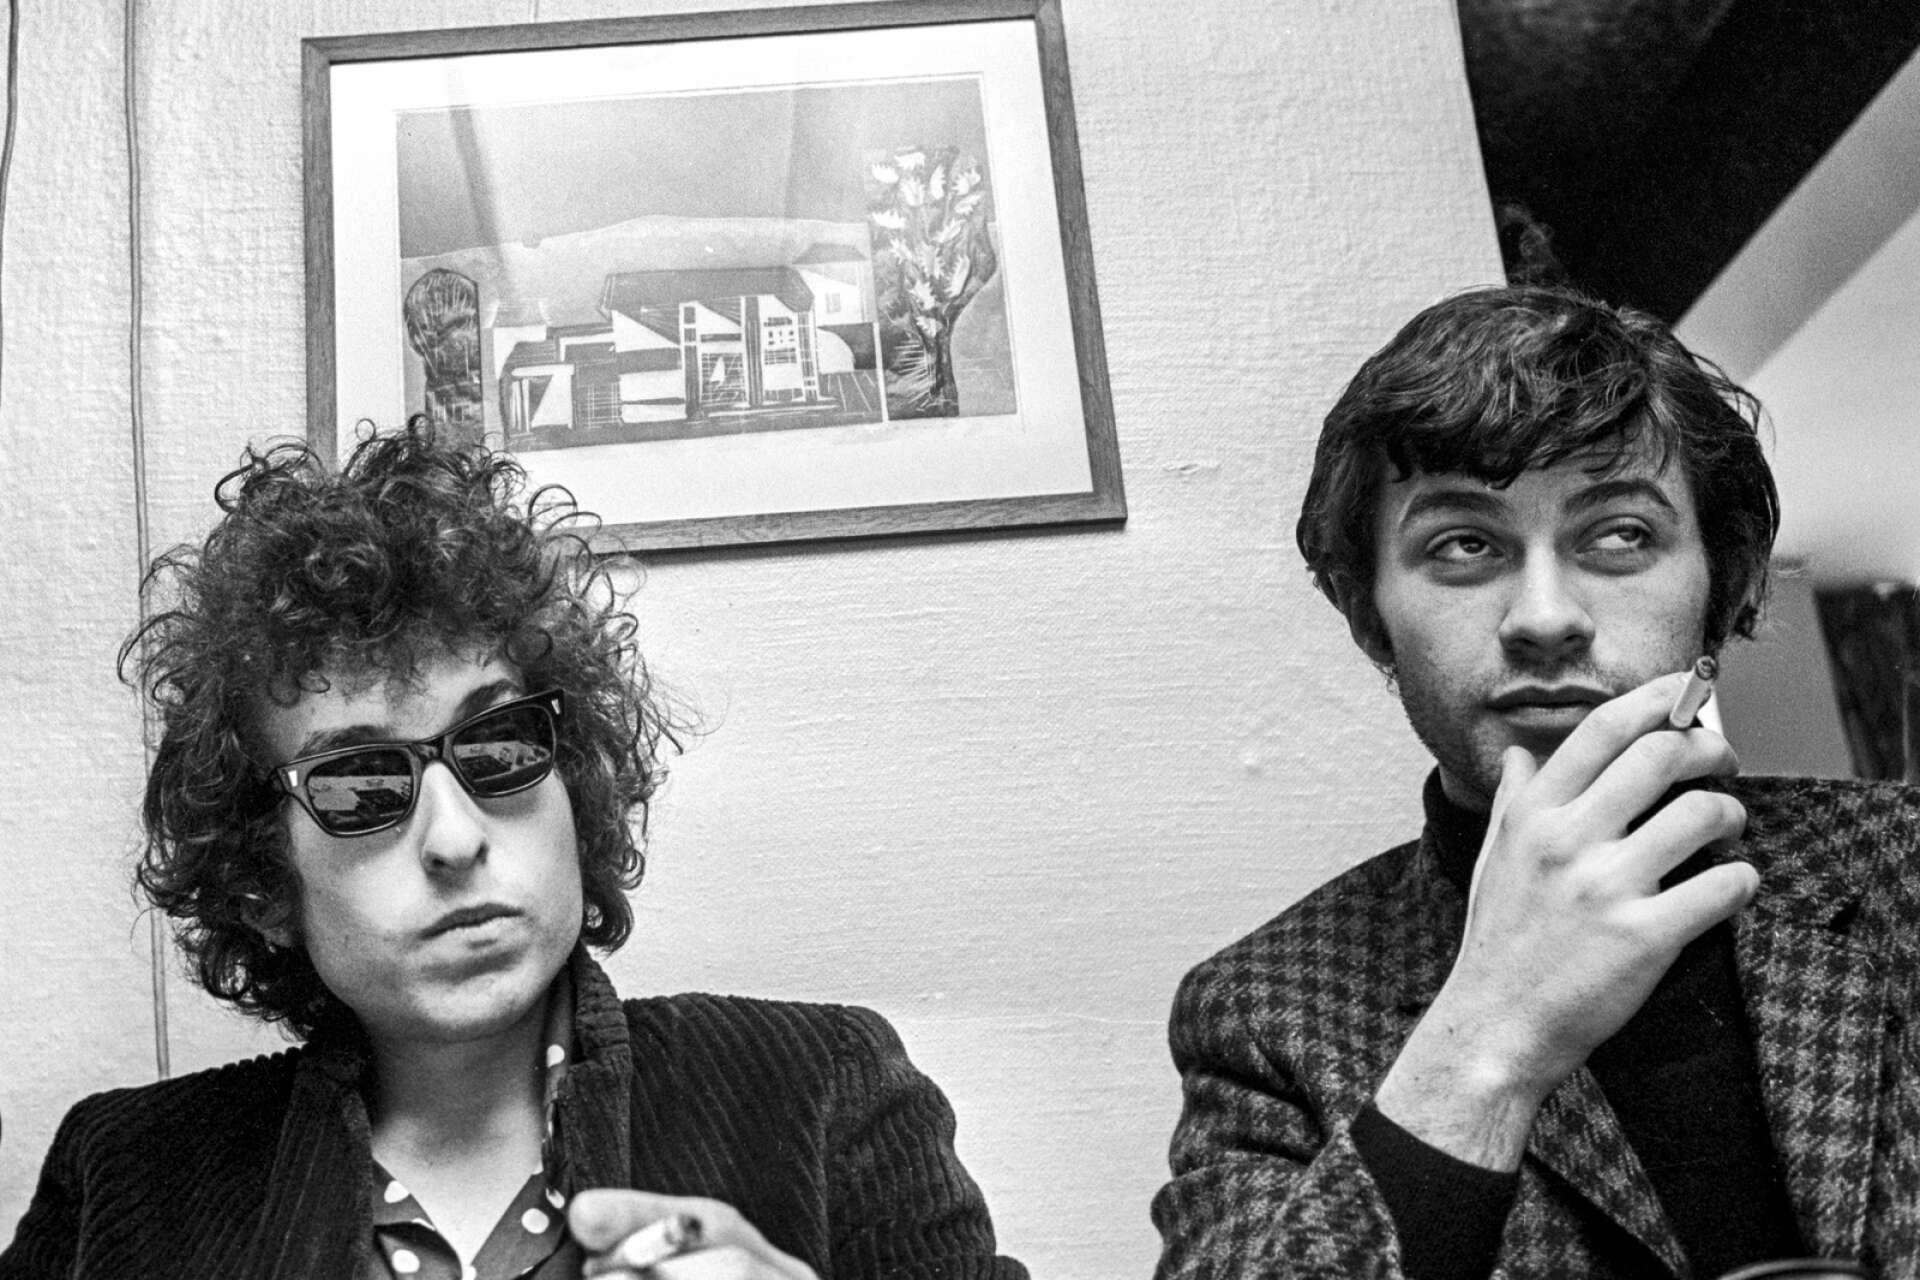 ”Bob Dylan gav rockmusiken intellekt och litteraturen ett par svarta solglasögon skrev jag när Dylan fick sitt Nobelpris. Det var precis vad som hände under den turnén. Robbie Robertson var med och formade en musikalisk revolution.”